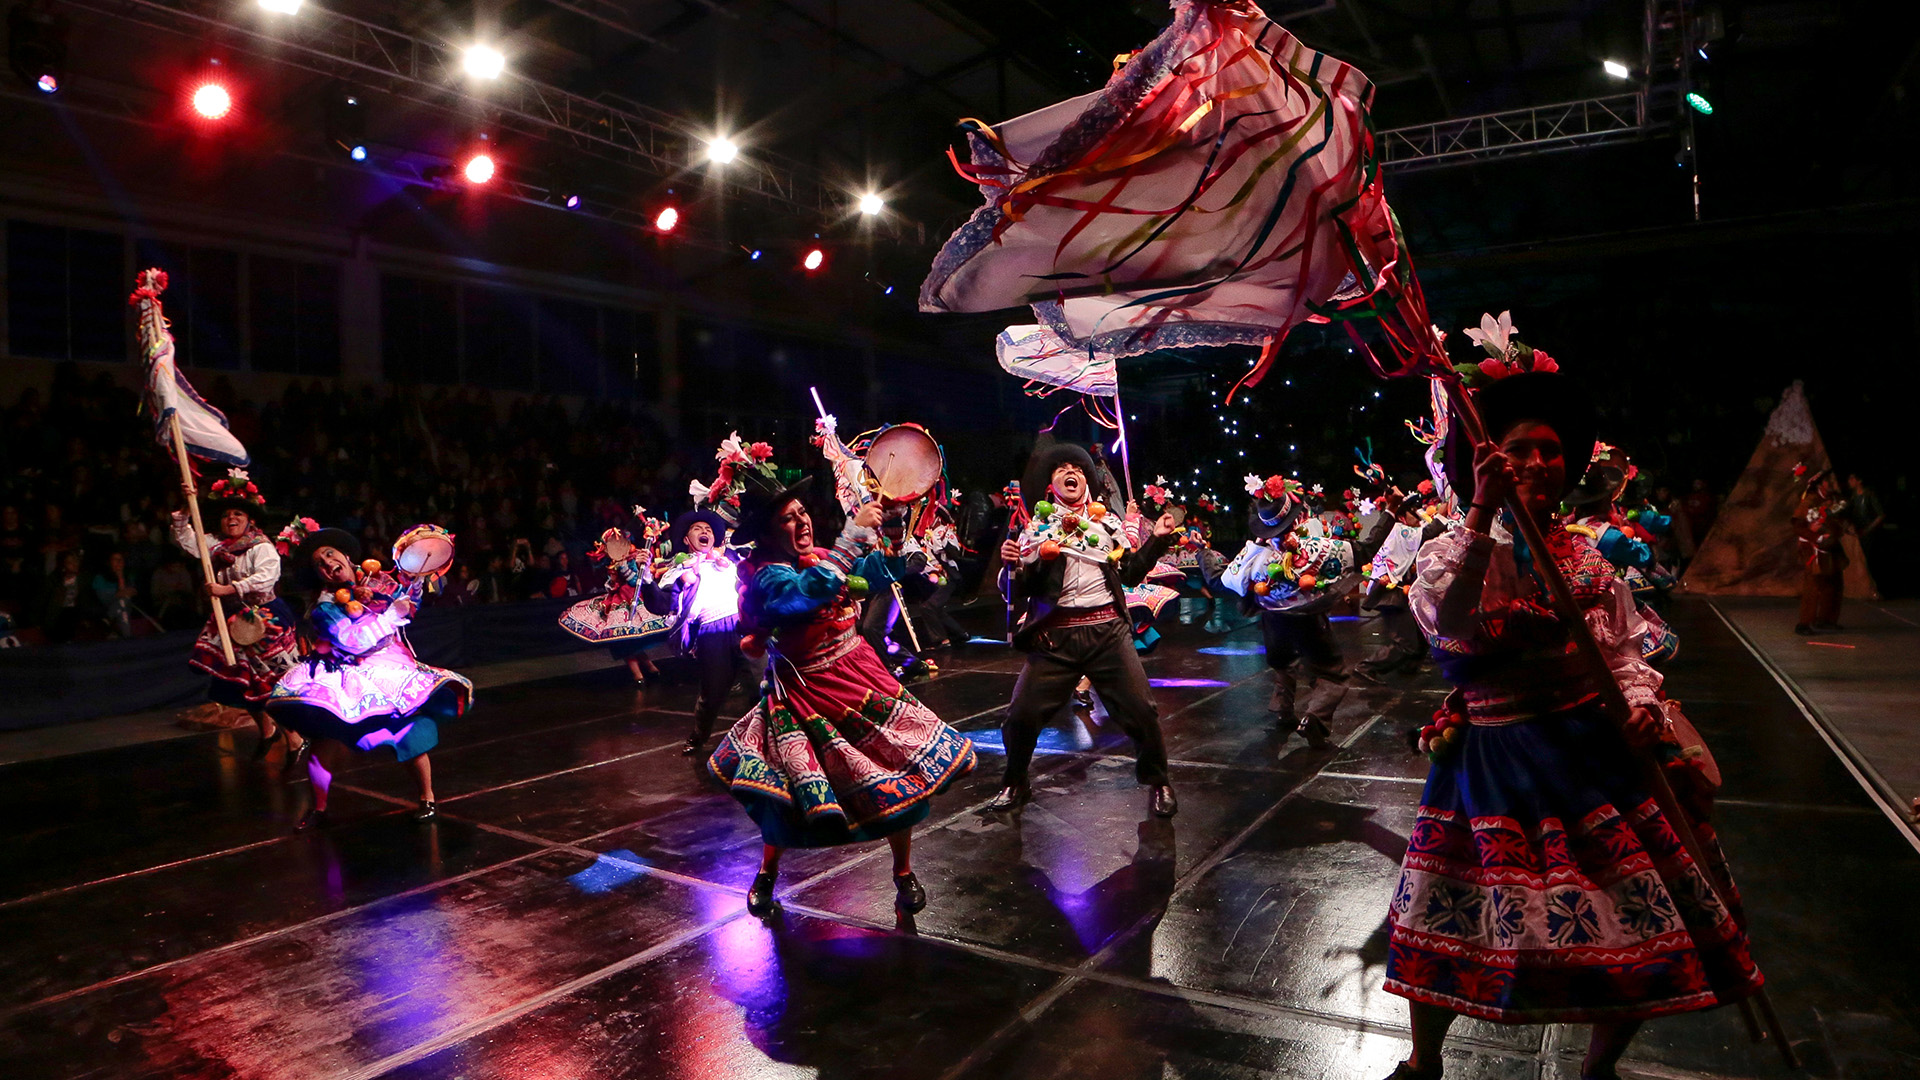 Noche cultural de los juegos interfacultades de la PUCP. En un escenario iluminado con luces moradas, unos 15 estudiantes bailan una danza folclórica.